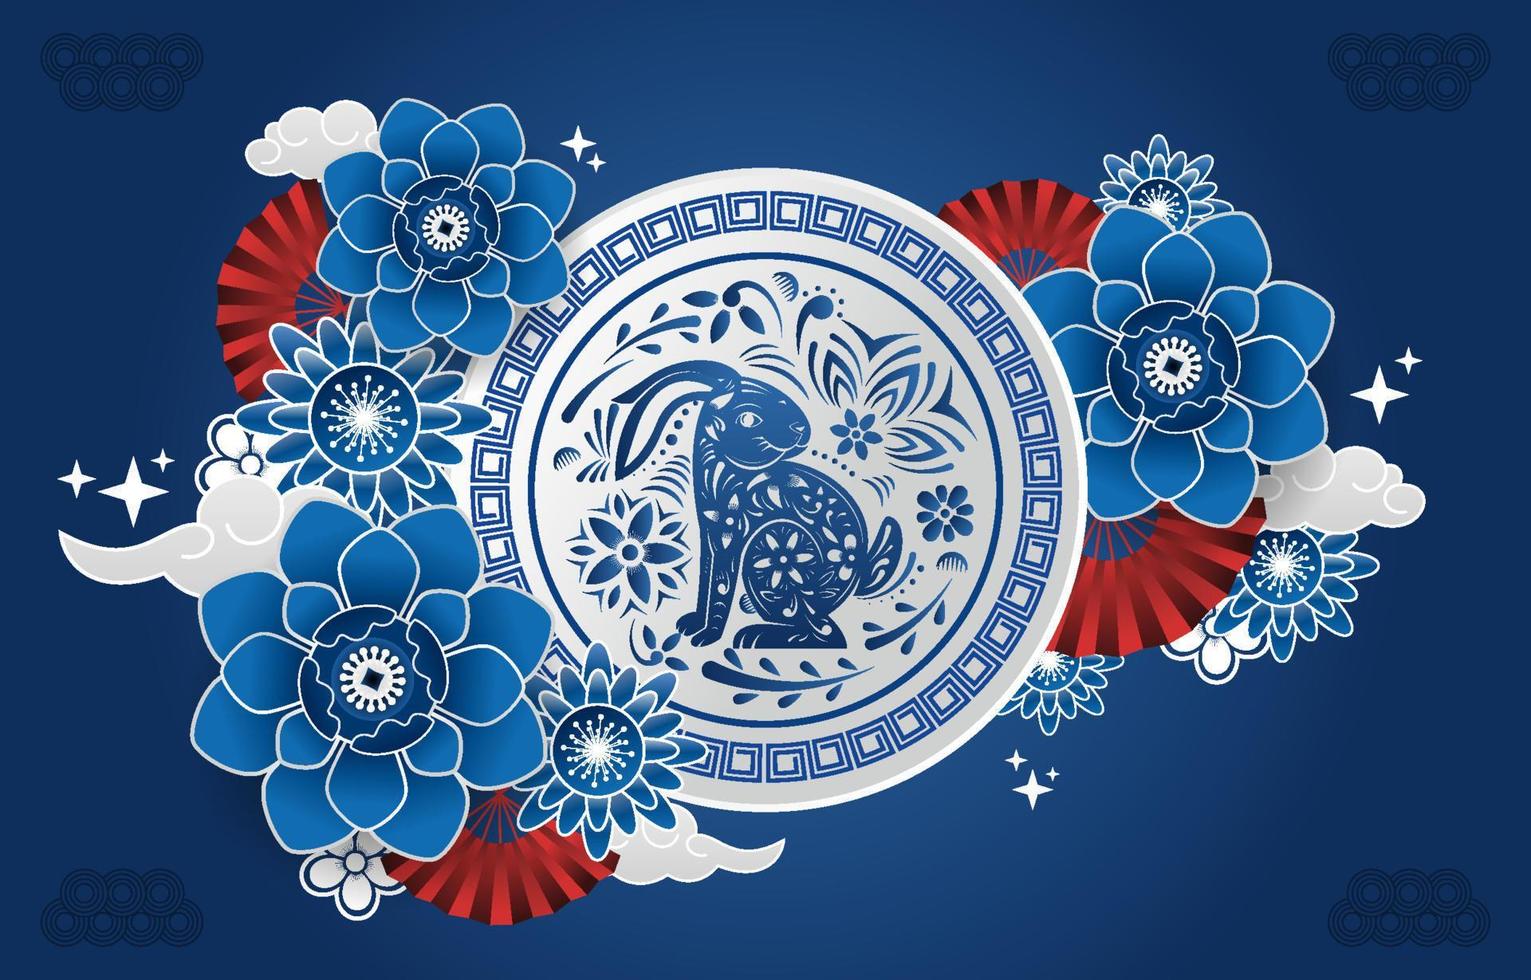 Blauwasserkaninchen mit chinesischen Ornamenten vektor